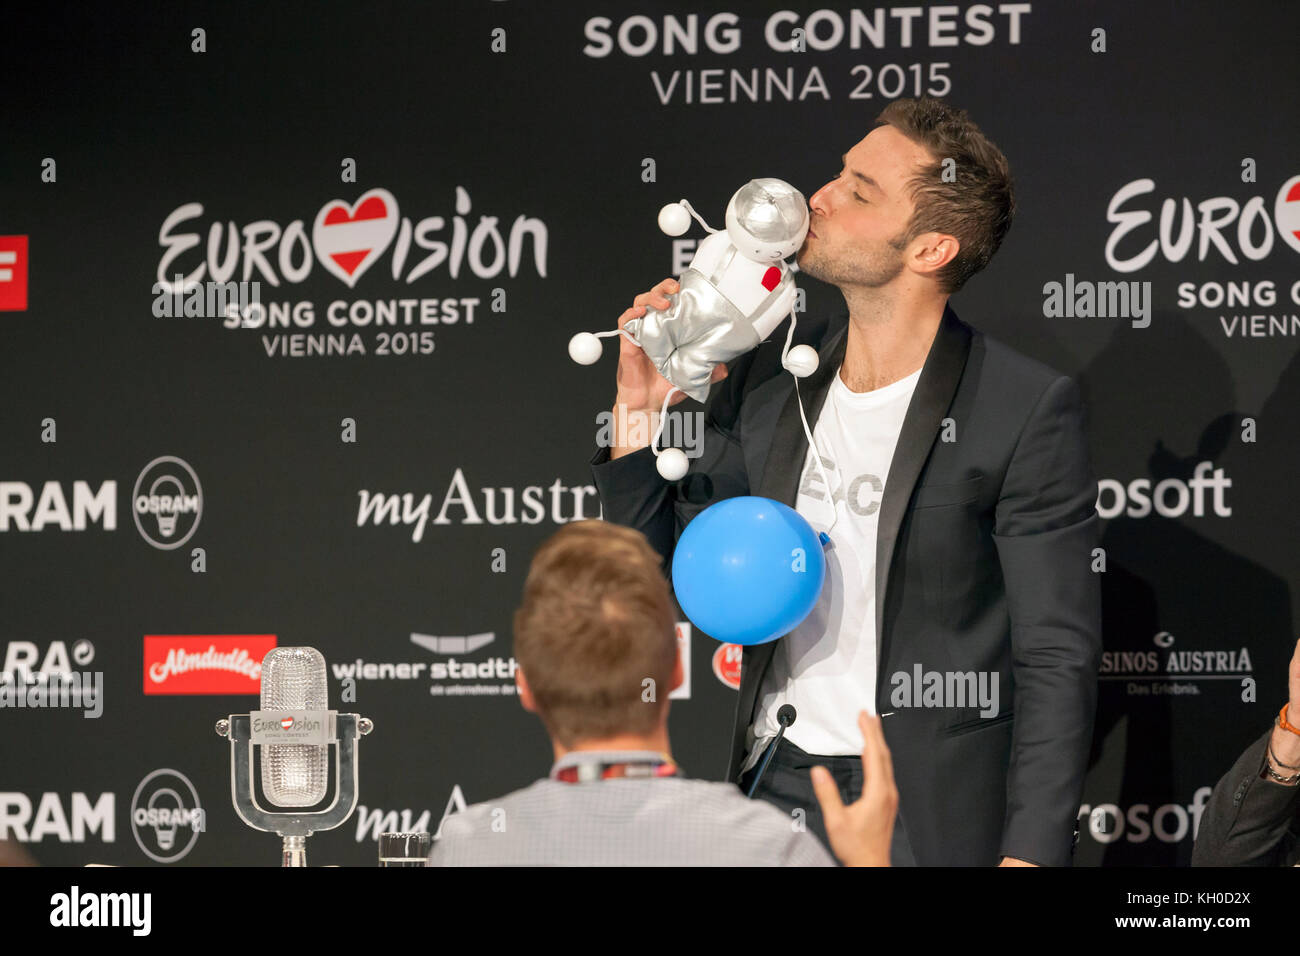 El ganador del Festival de la canción de Eurovisión Måns Zelmerlöw, de  Suecia, da una conferencia de prensa después de la Gran final de la 60ª  edición del Festival de la canción